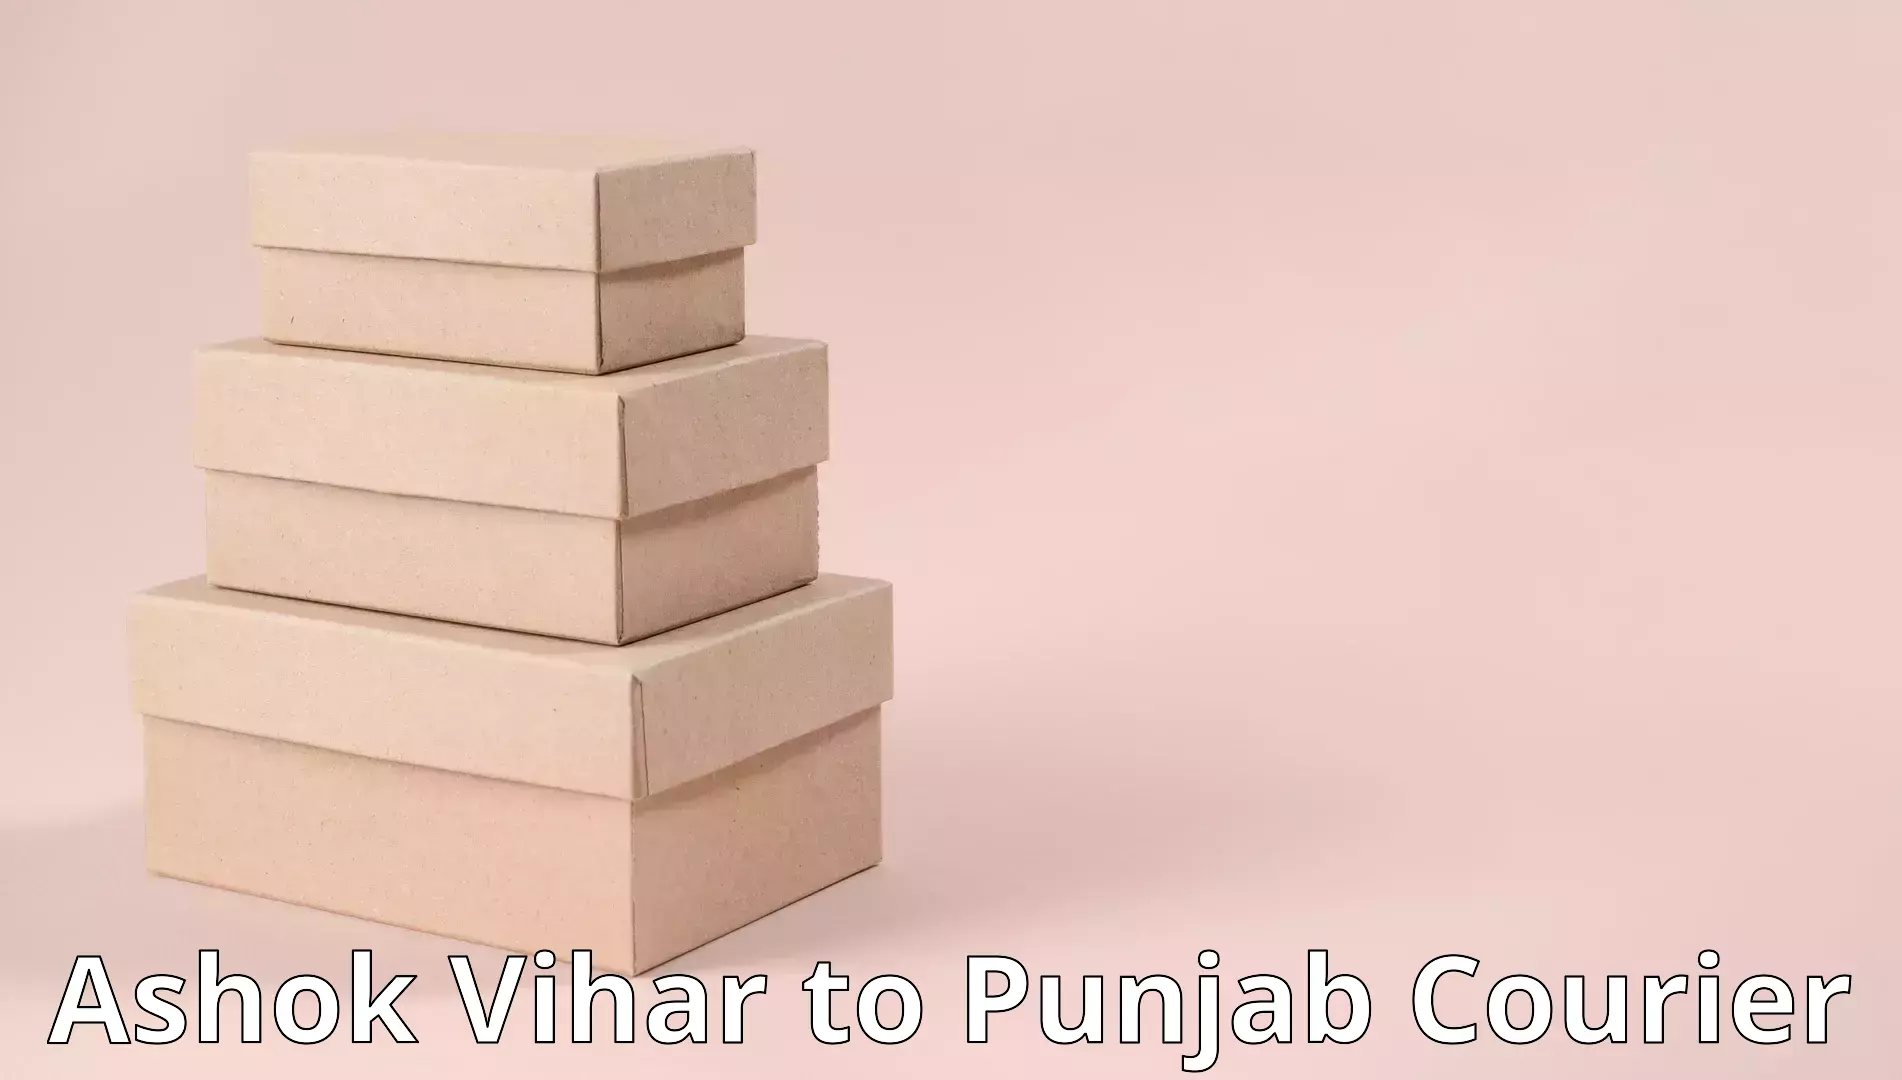 Furniture transport company Ashok Vihar to Punjab